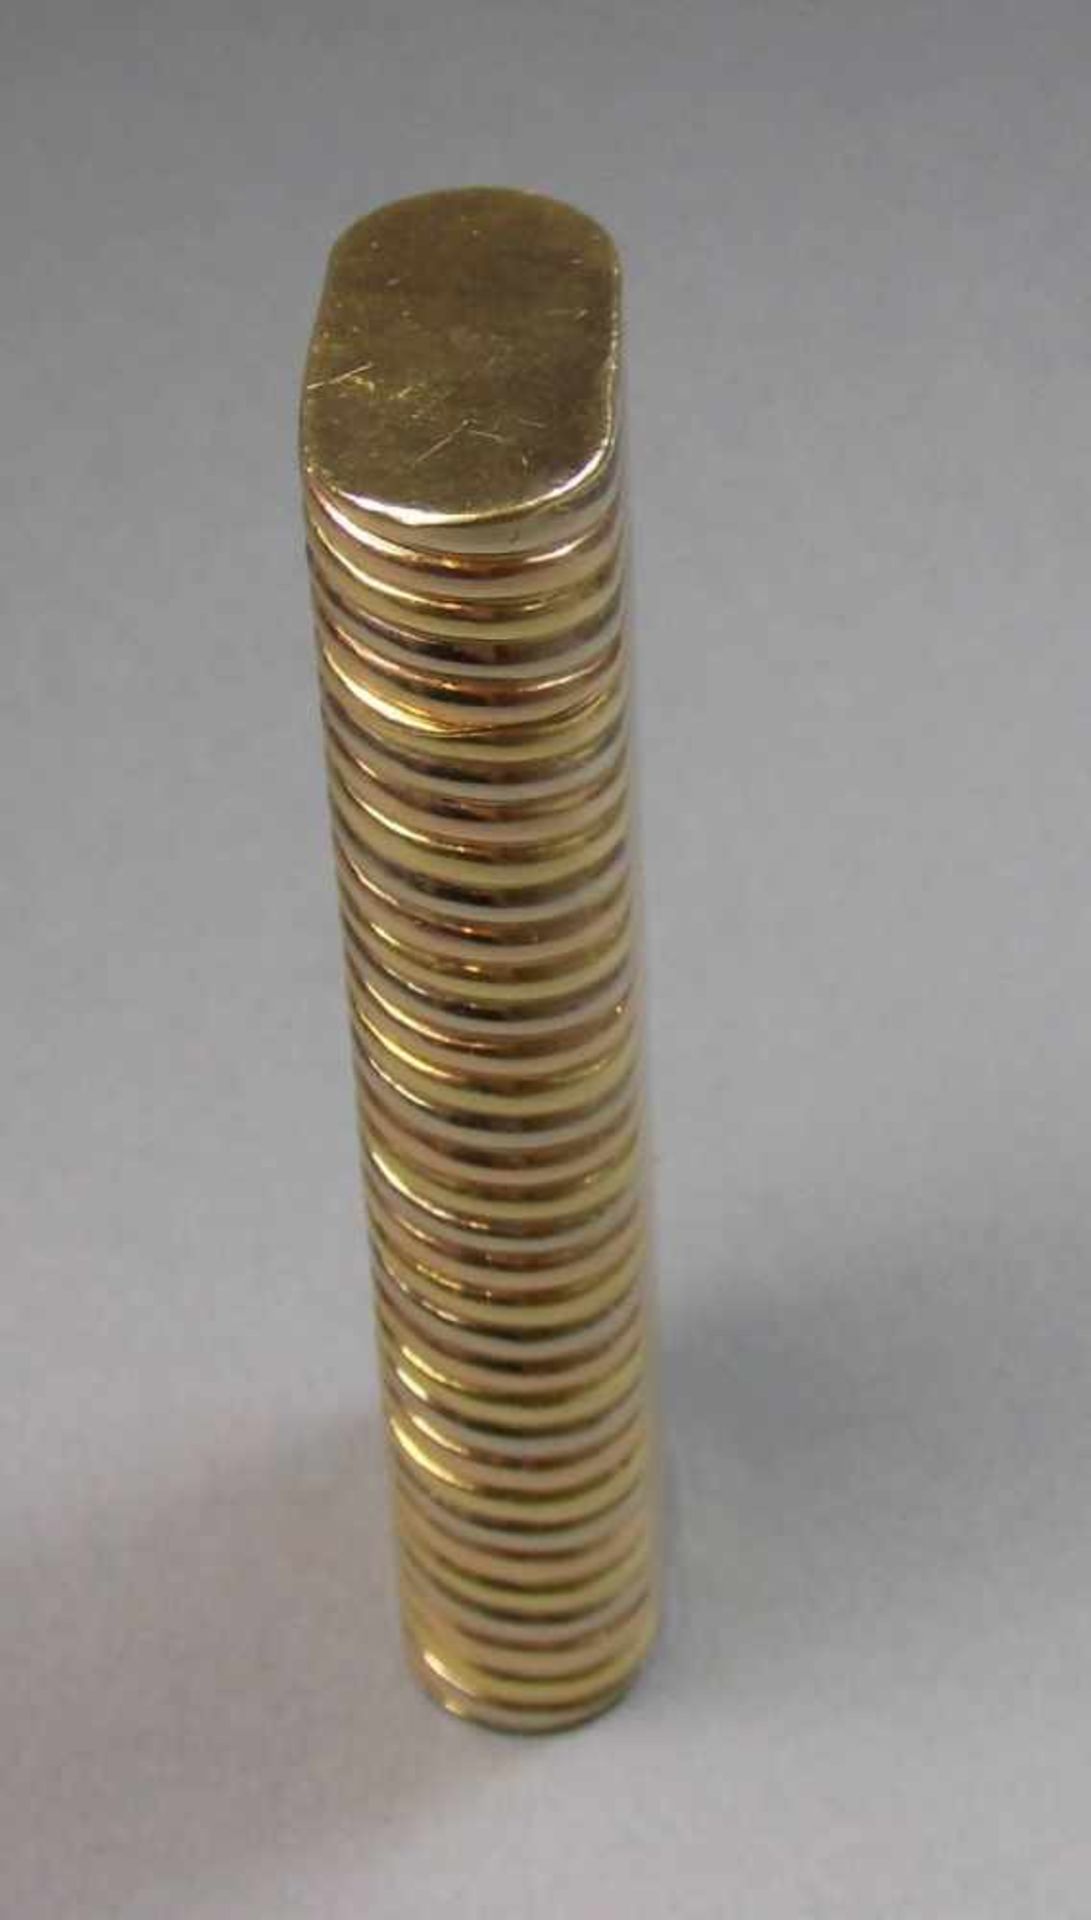 CARTIER FEUERZEUG / lighter, Gold (750er, 92 g), Frankreich, unter dem Stand Firmenstempel " Cartier - Image 2 of 4